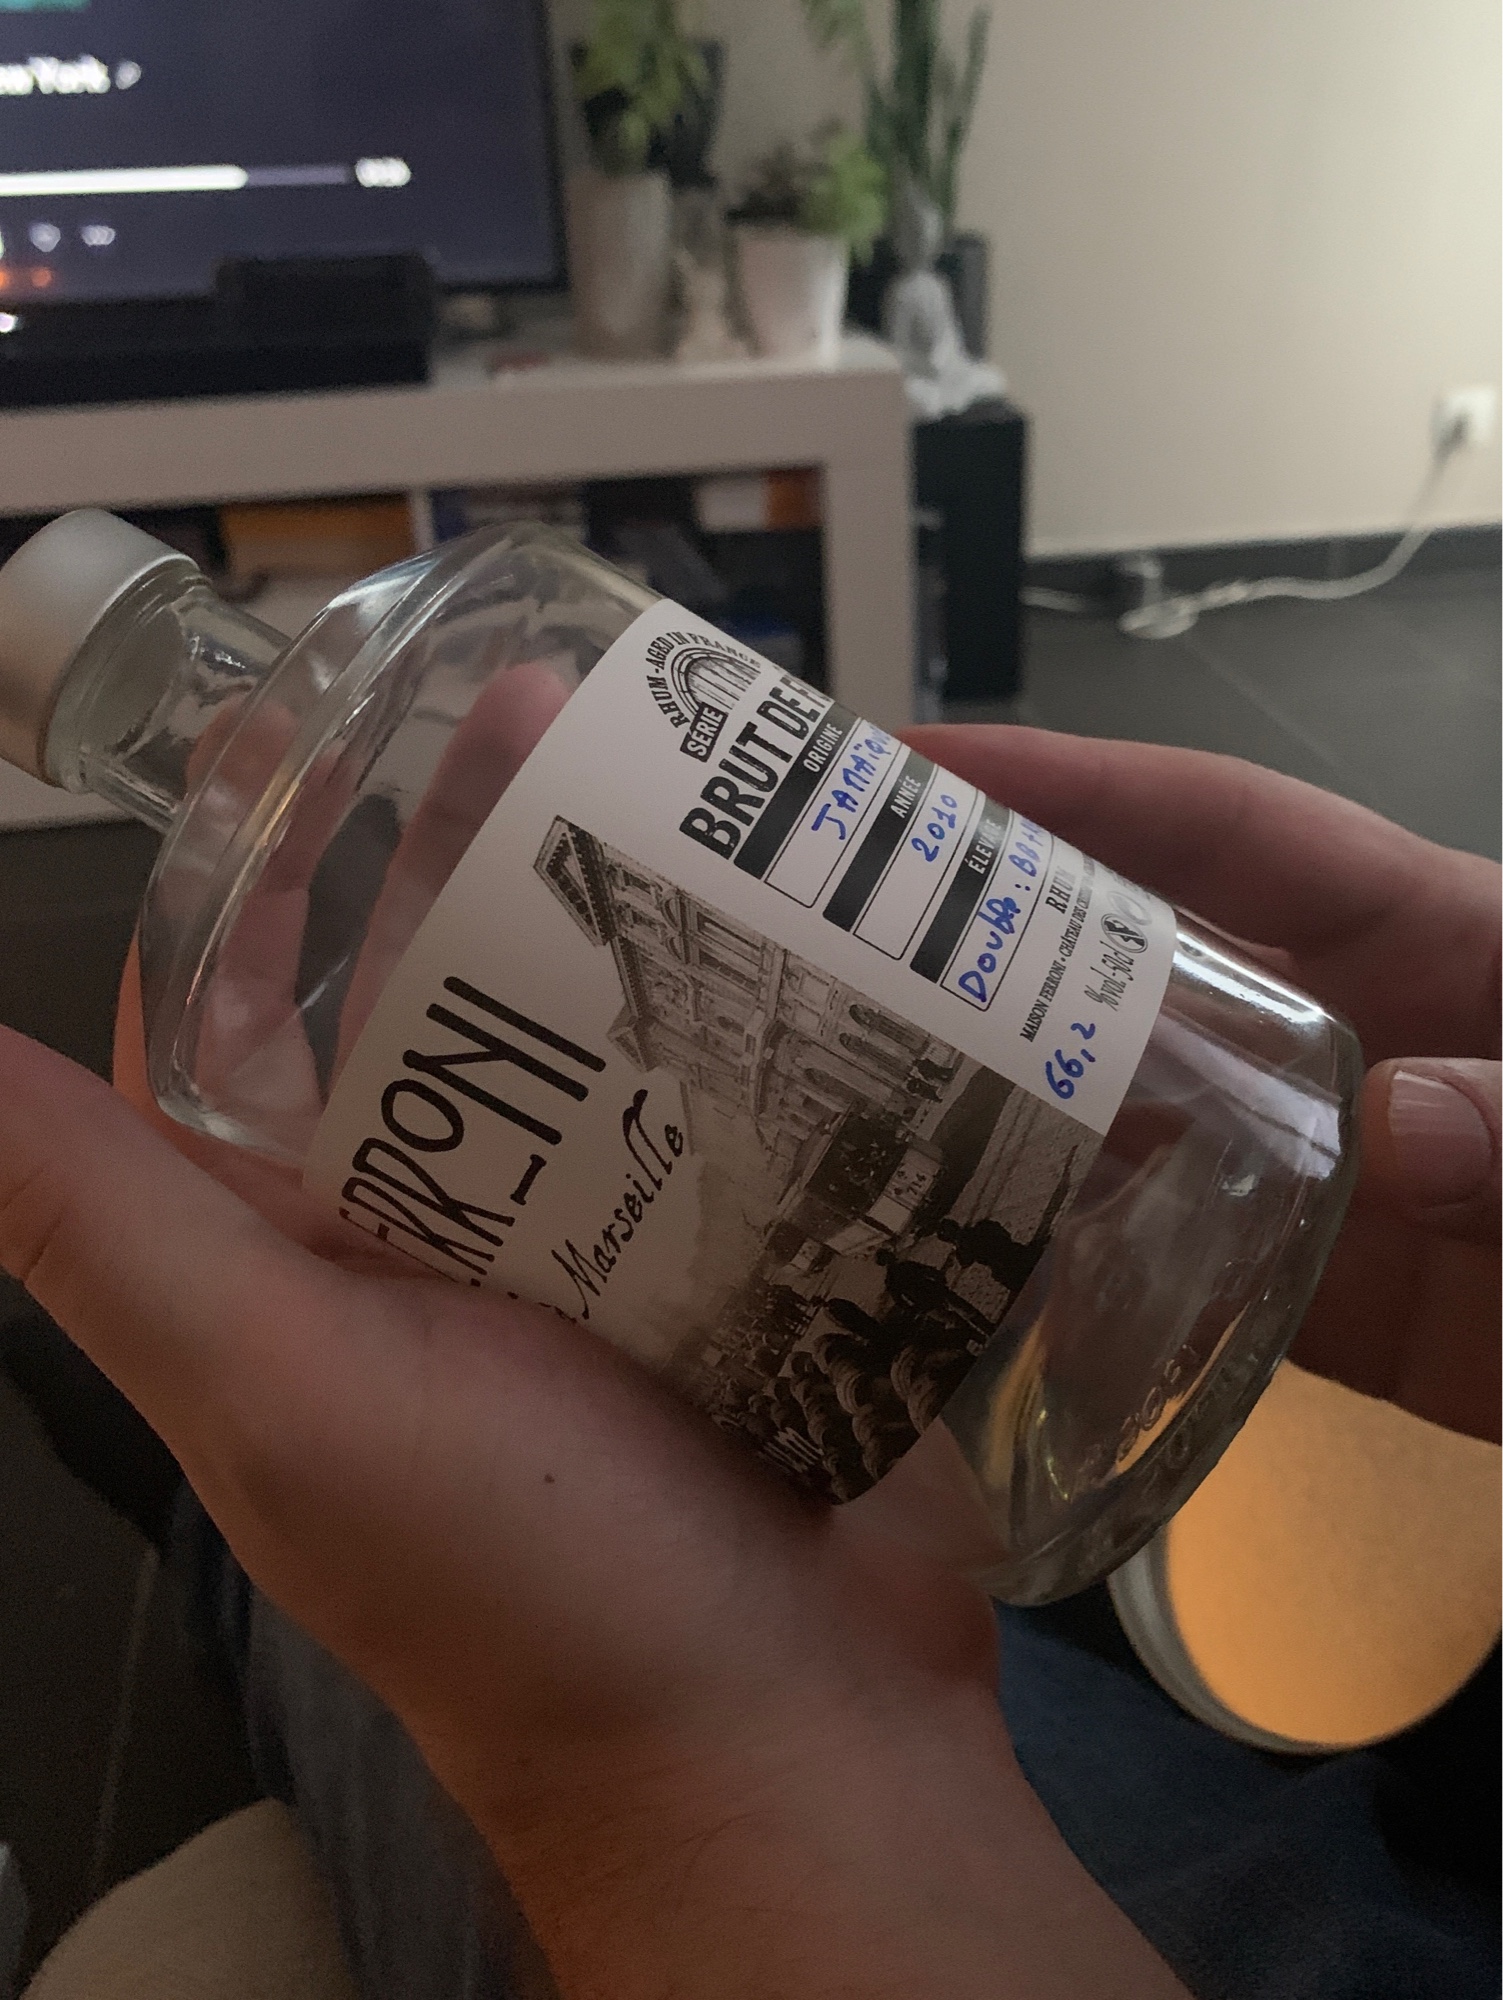 Photo of the bottle taken from user xJHVx